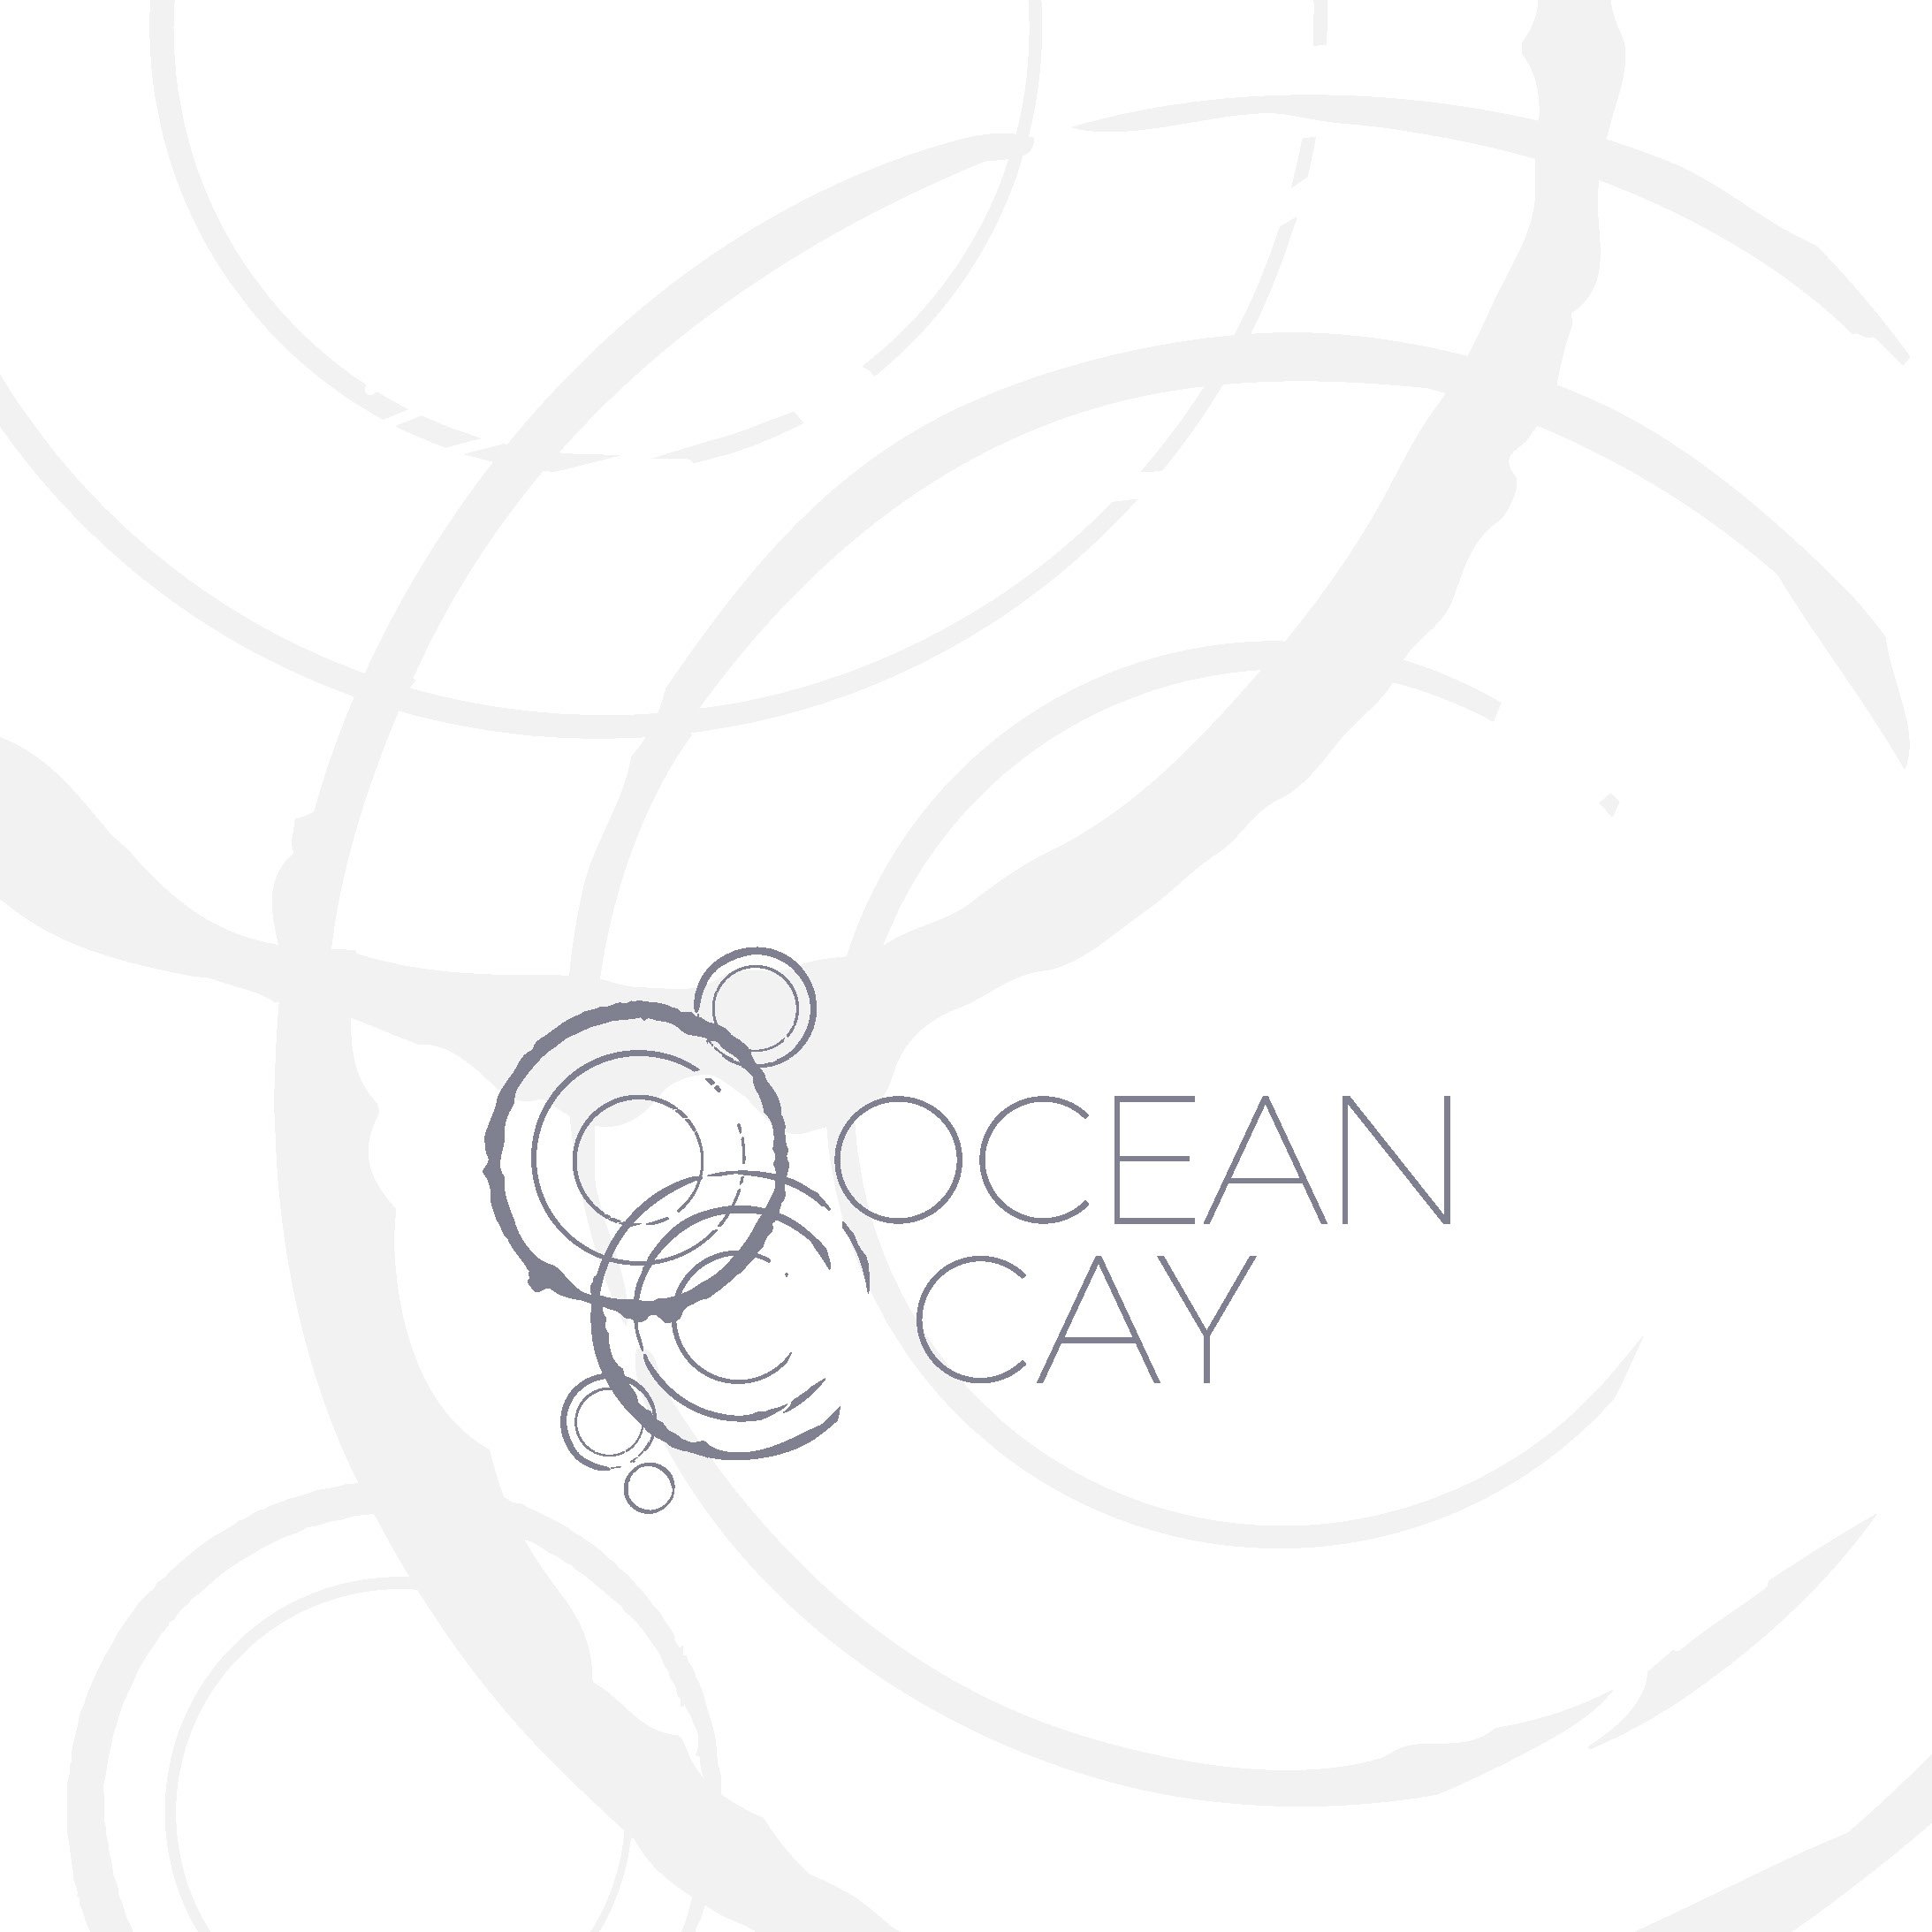 MSC Meraviglia - OCEAN-CAY_Page_1.jpg